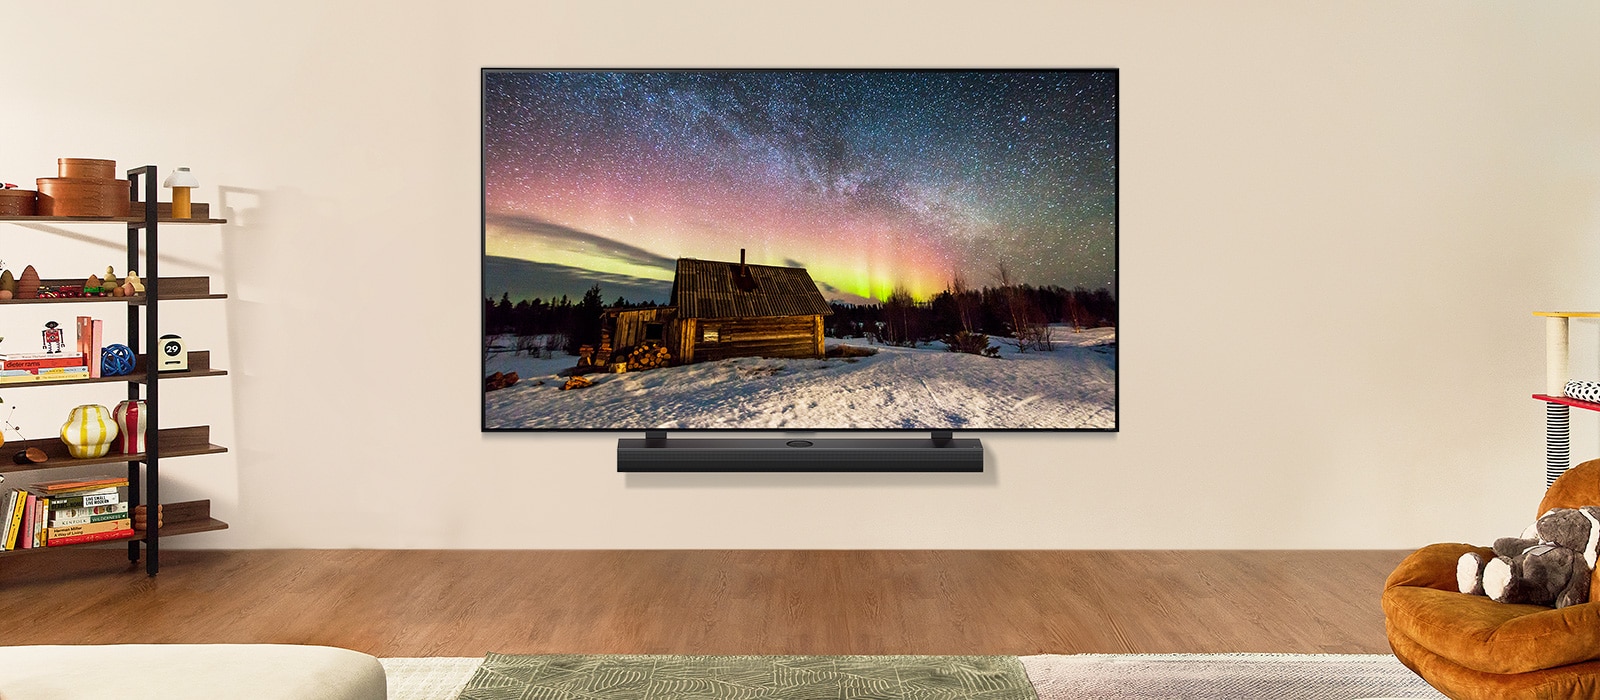 Uma TV LG e uma Soundbar da LG em uma sala de estar moderna durante o dia. A imagem de uma aurora boreal é exibida na tela com os níveis ideais de brilho.